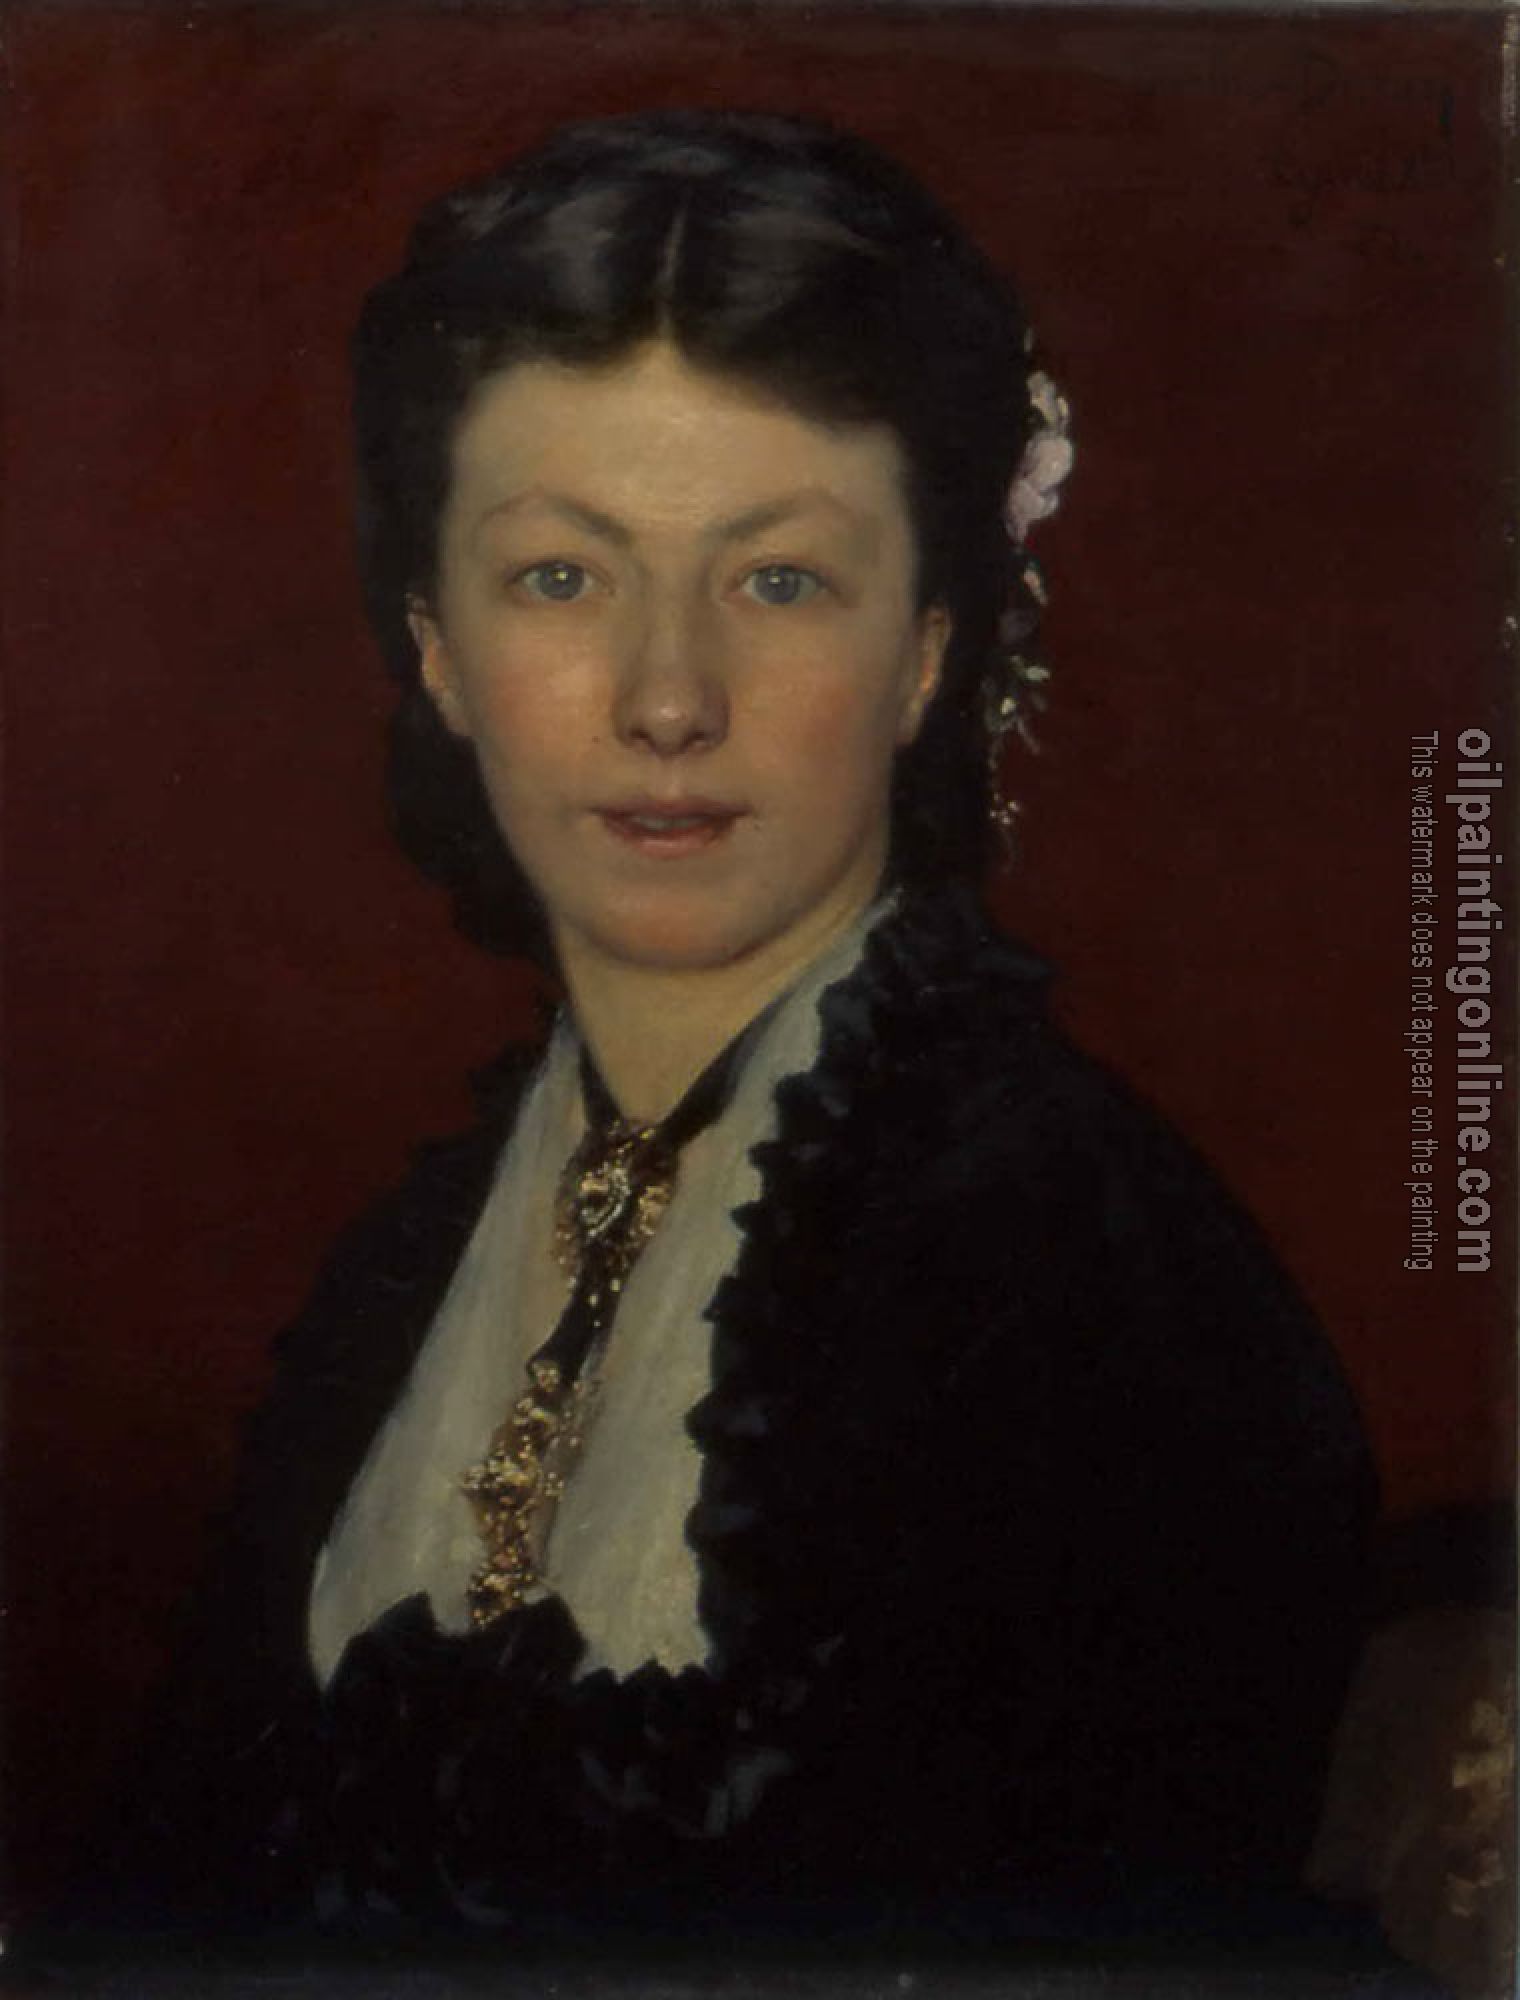 Carolus-Duran - Portrait de Mme Neyt